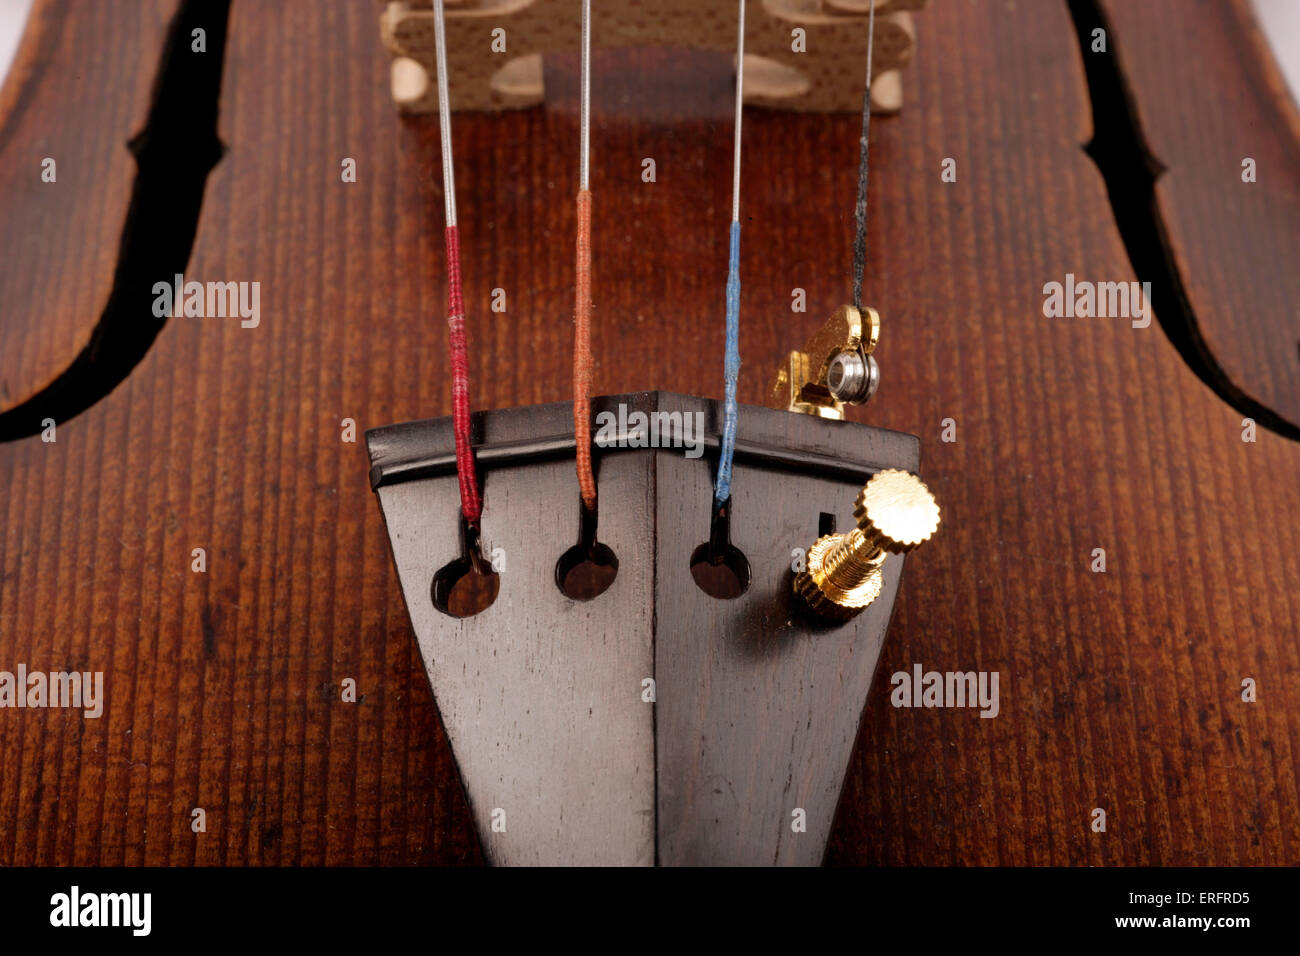 Geige Saiten und Saitenhalter - Kopie eines Instruments von Jacobus Stainer  gemacht. Nahaufnahme von Saiten und Saitenhalter Stockfotografie - Alamy